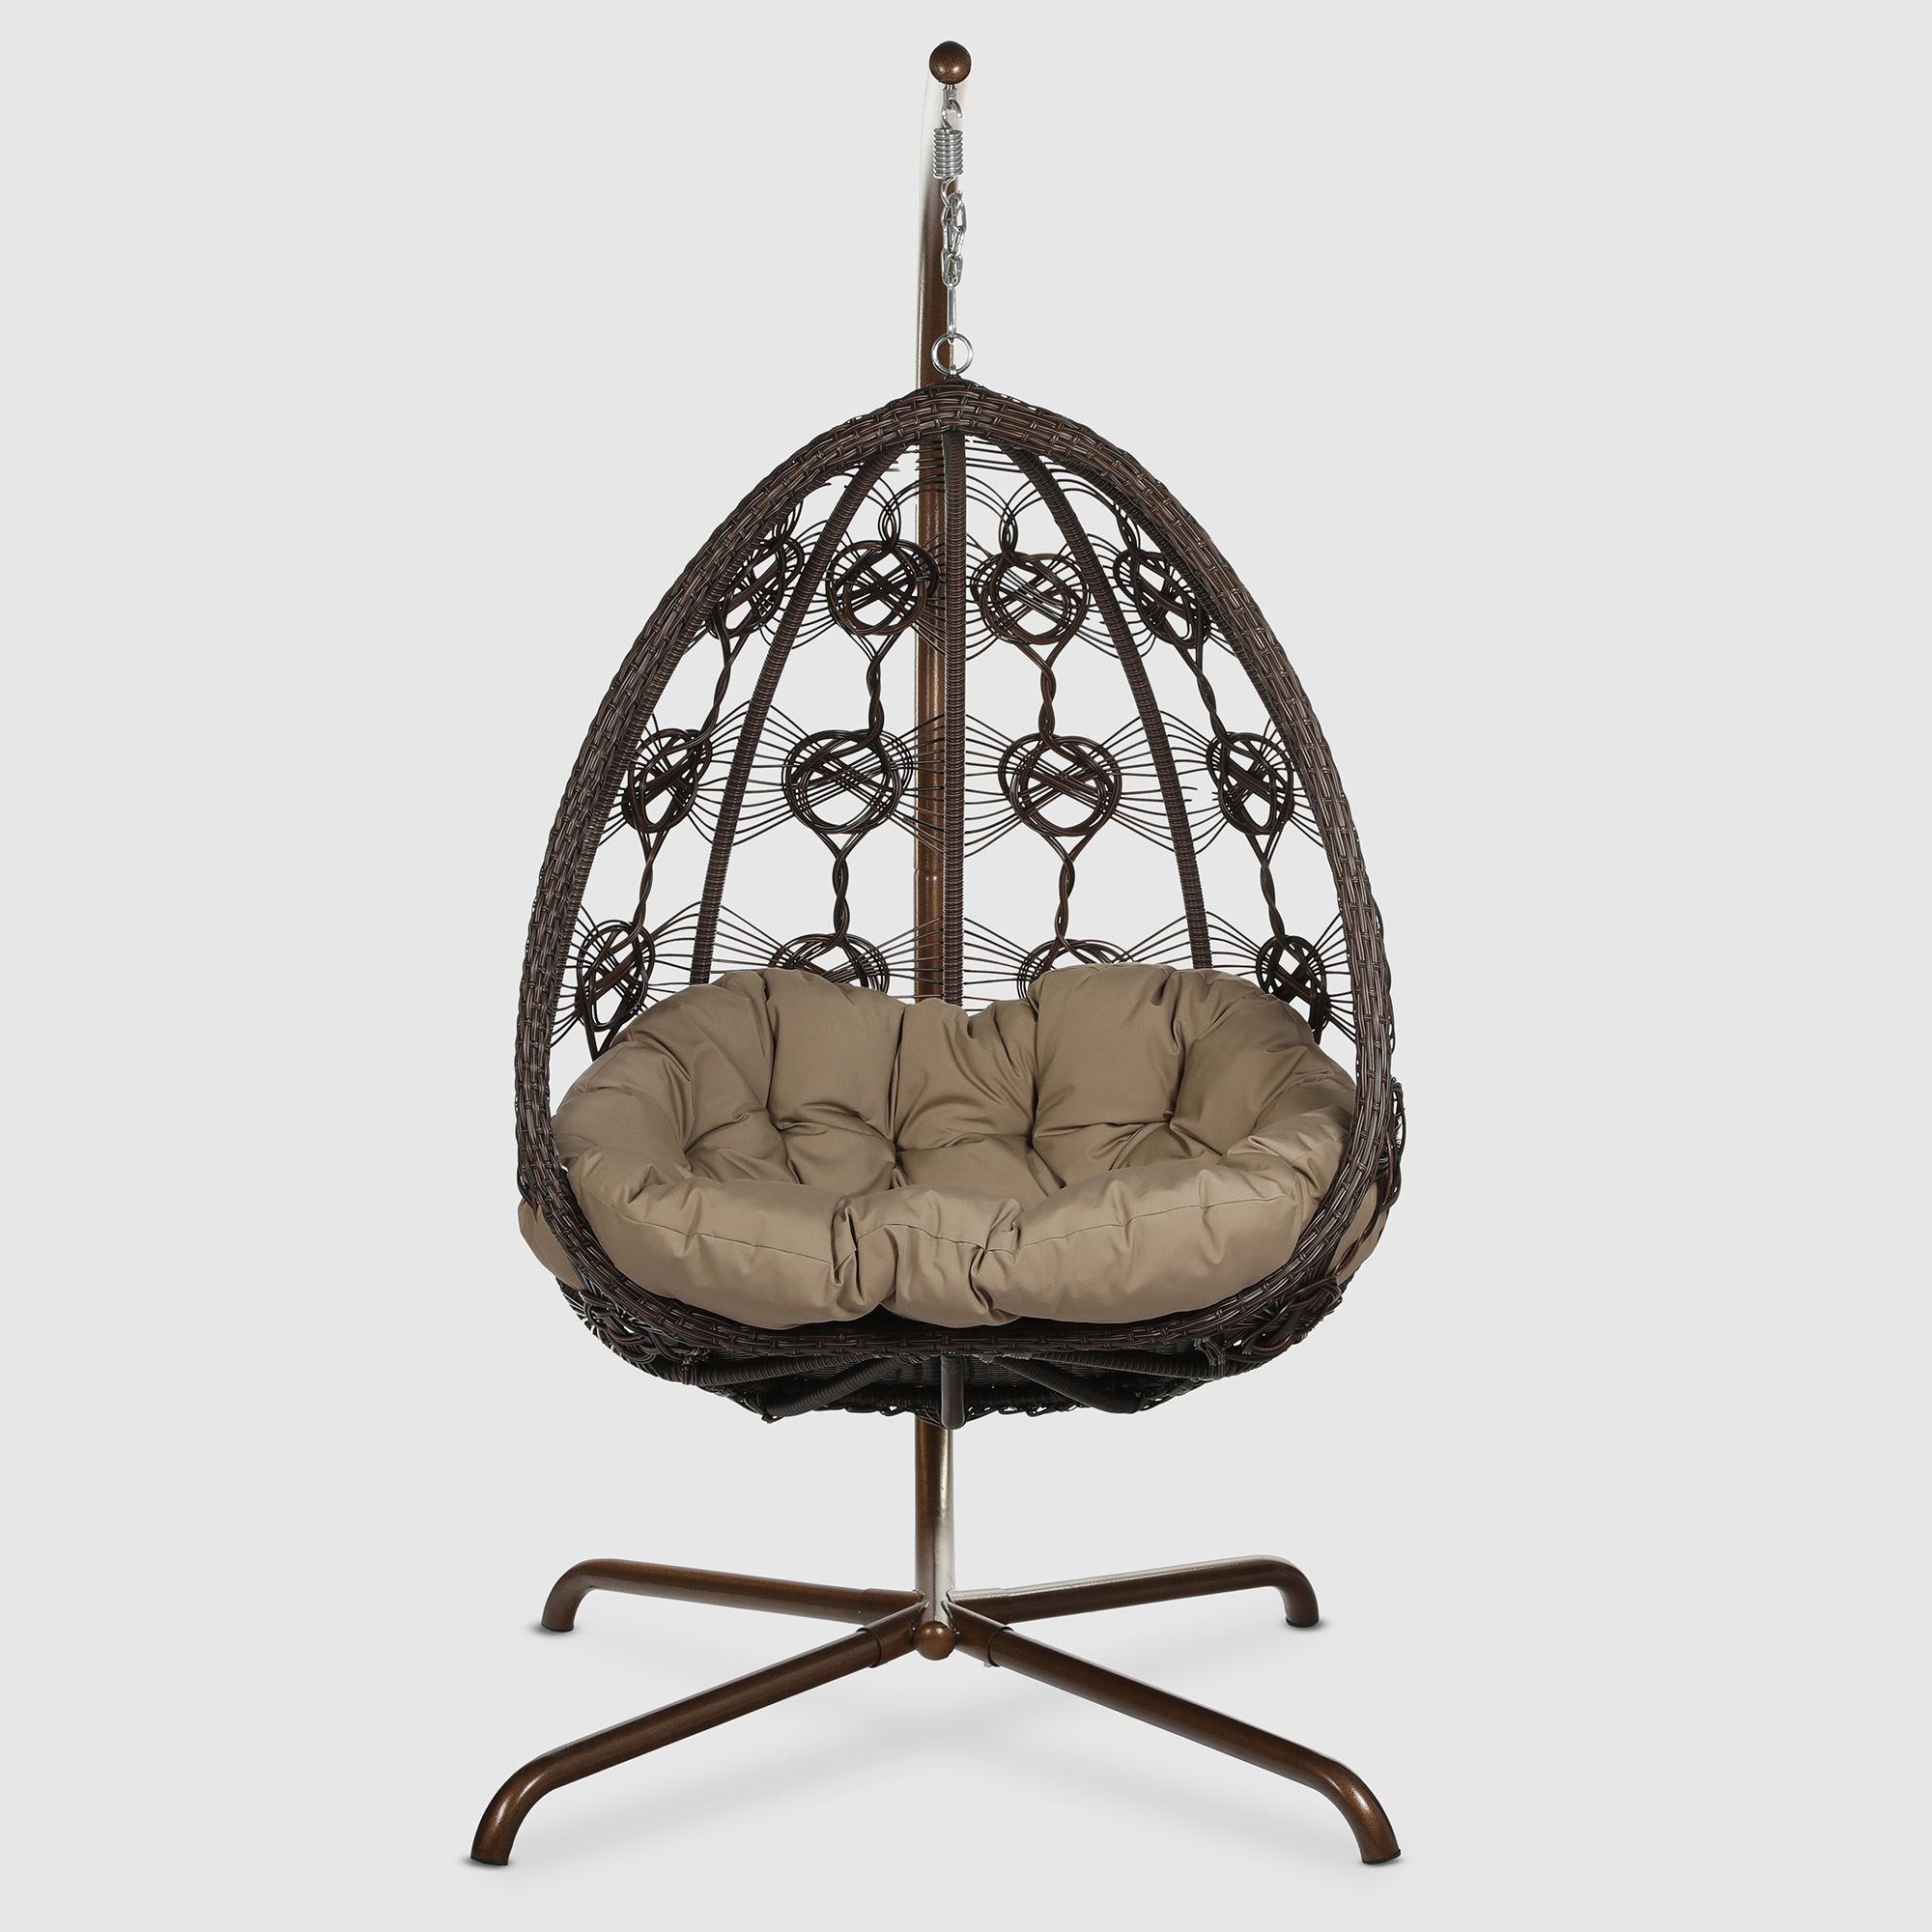 Кресло подвесное Ns Rattan Deco коричневое подвесное кресло afm 910a коричневое бежевое